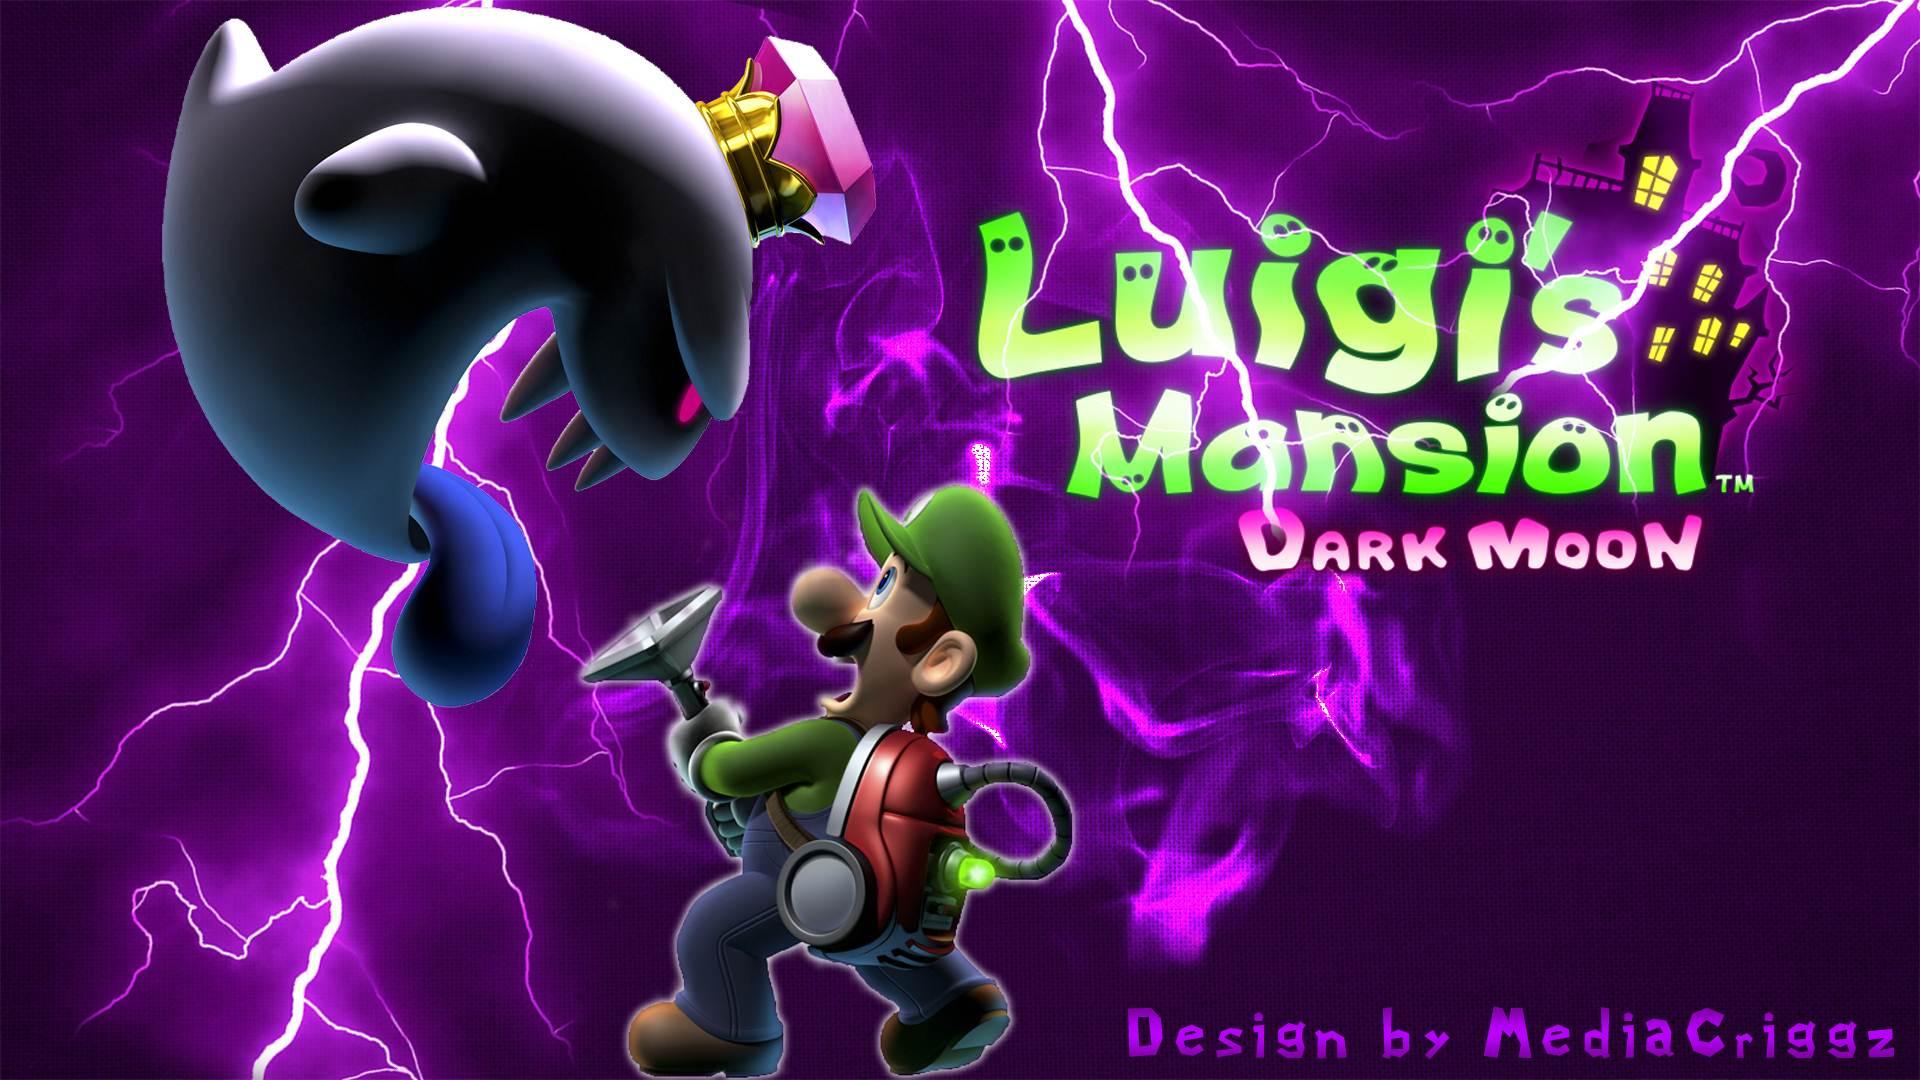 Luigi's Mansion Dark Moon Wallpaper in 1080P HD